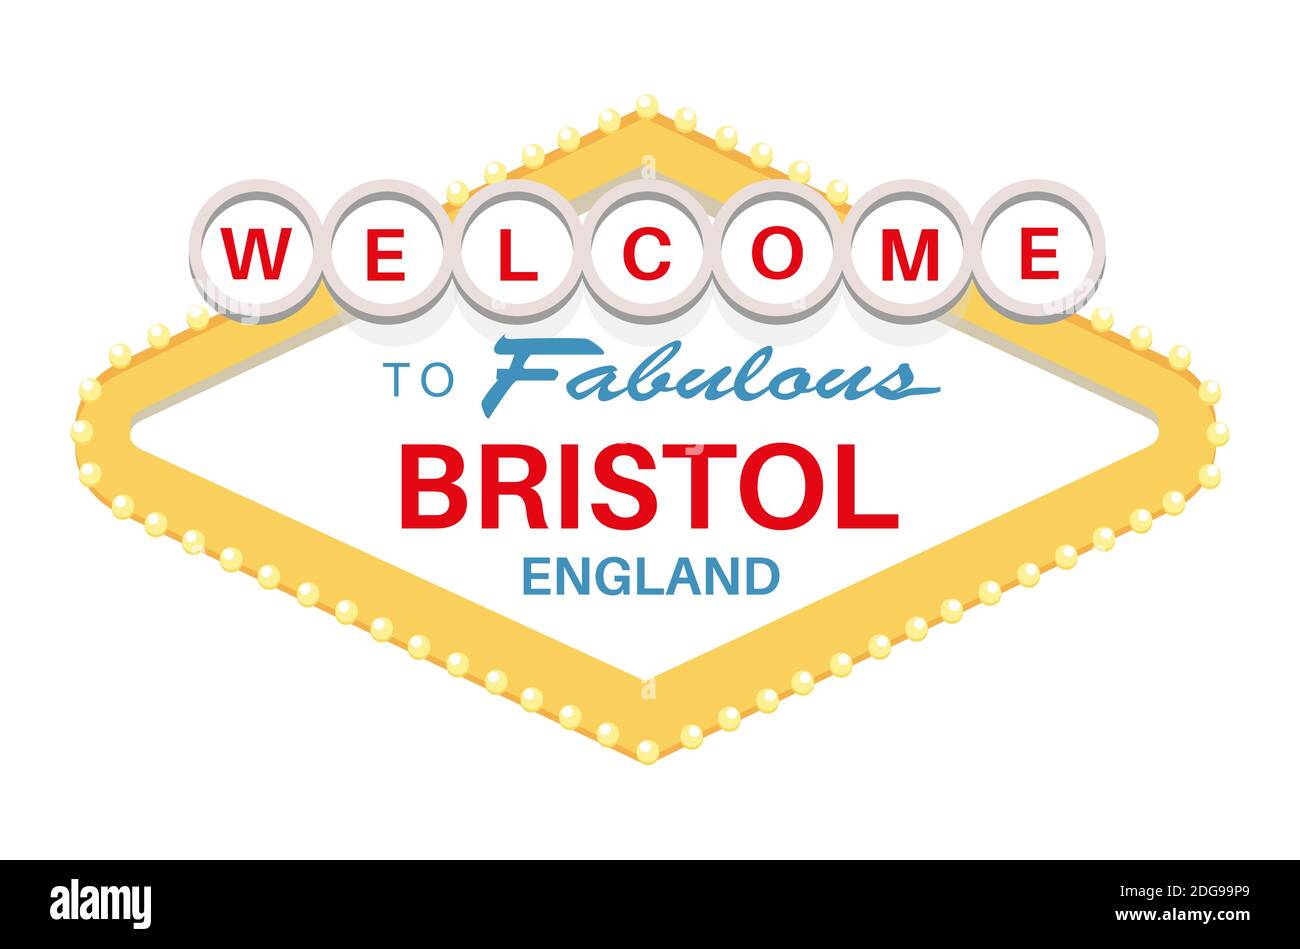 Willkommen bei Fabulous BristolEngland Zeichen - Vektor Illustration auf einem Weißer Hintergrund Stock Vektor